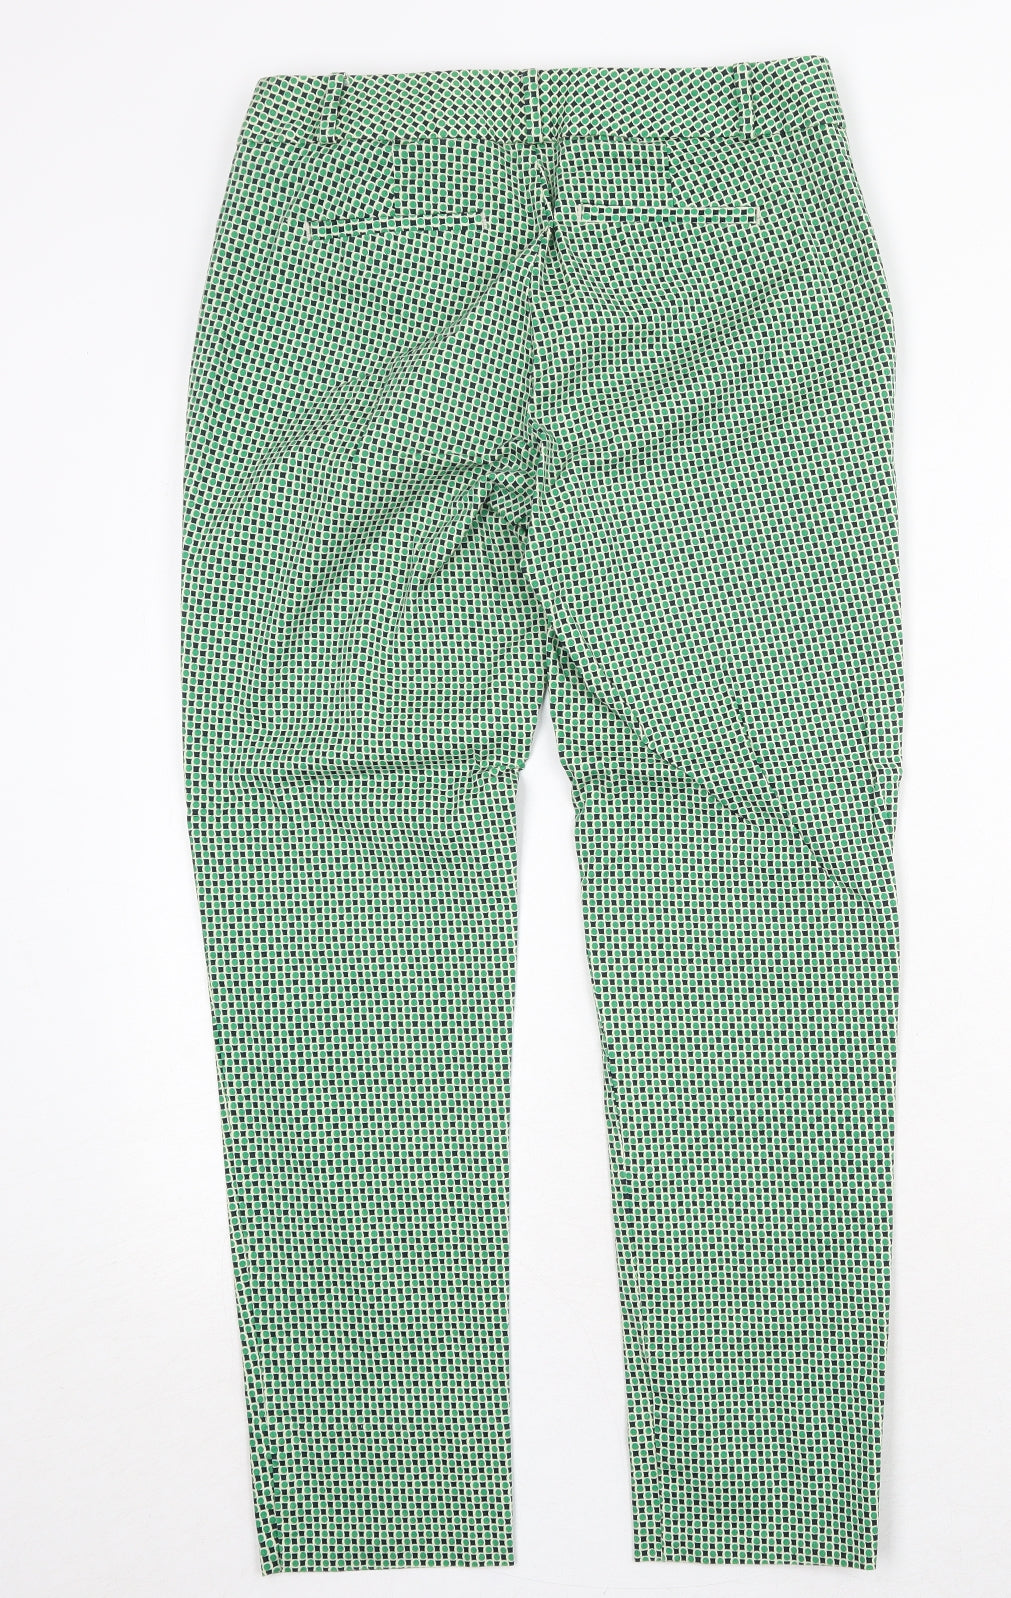 Banana Republic Womens Green Geometric Cotton Chino Trousers Size S Regular Zip